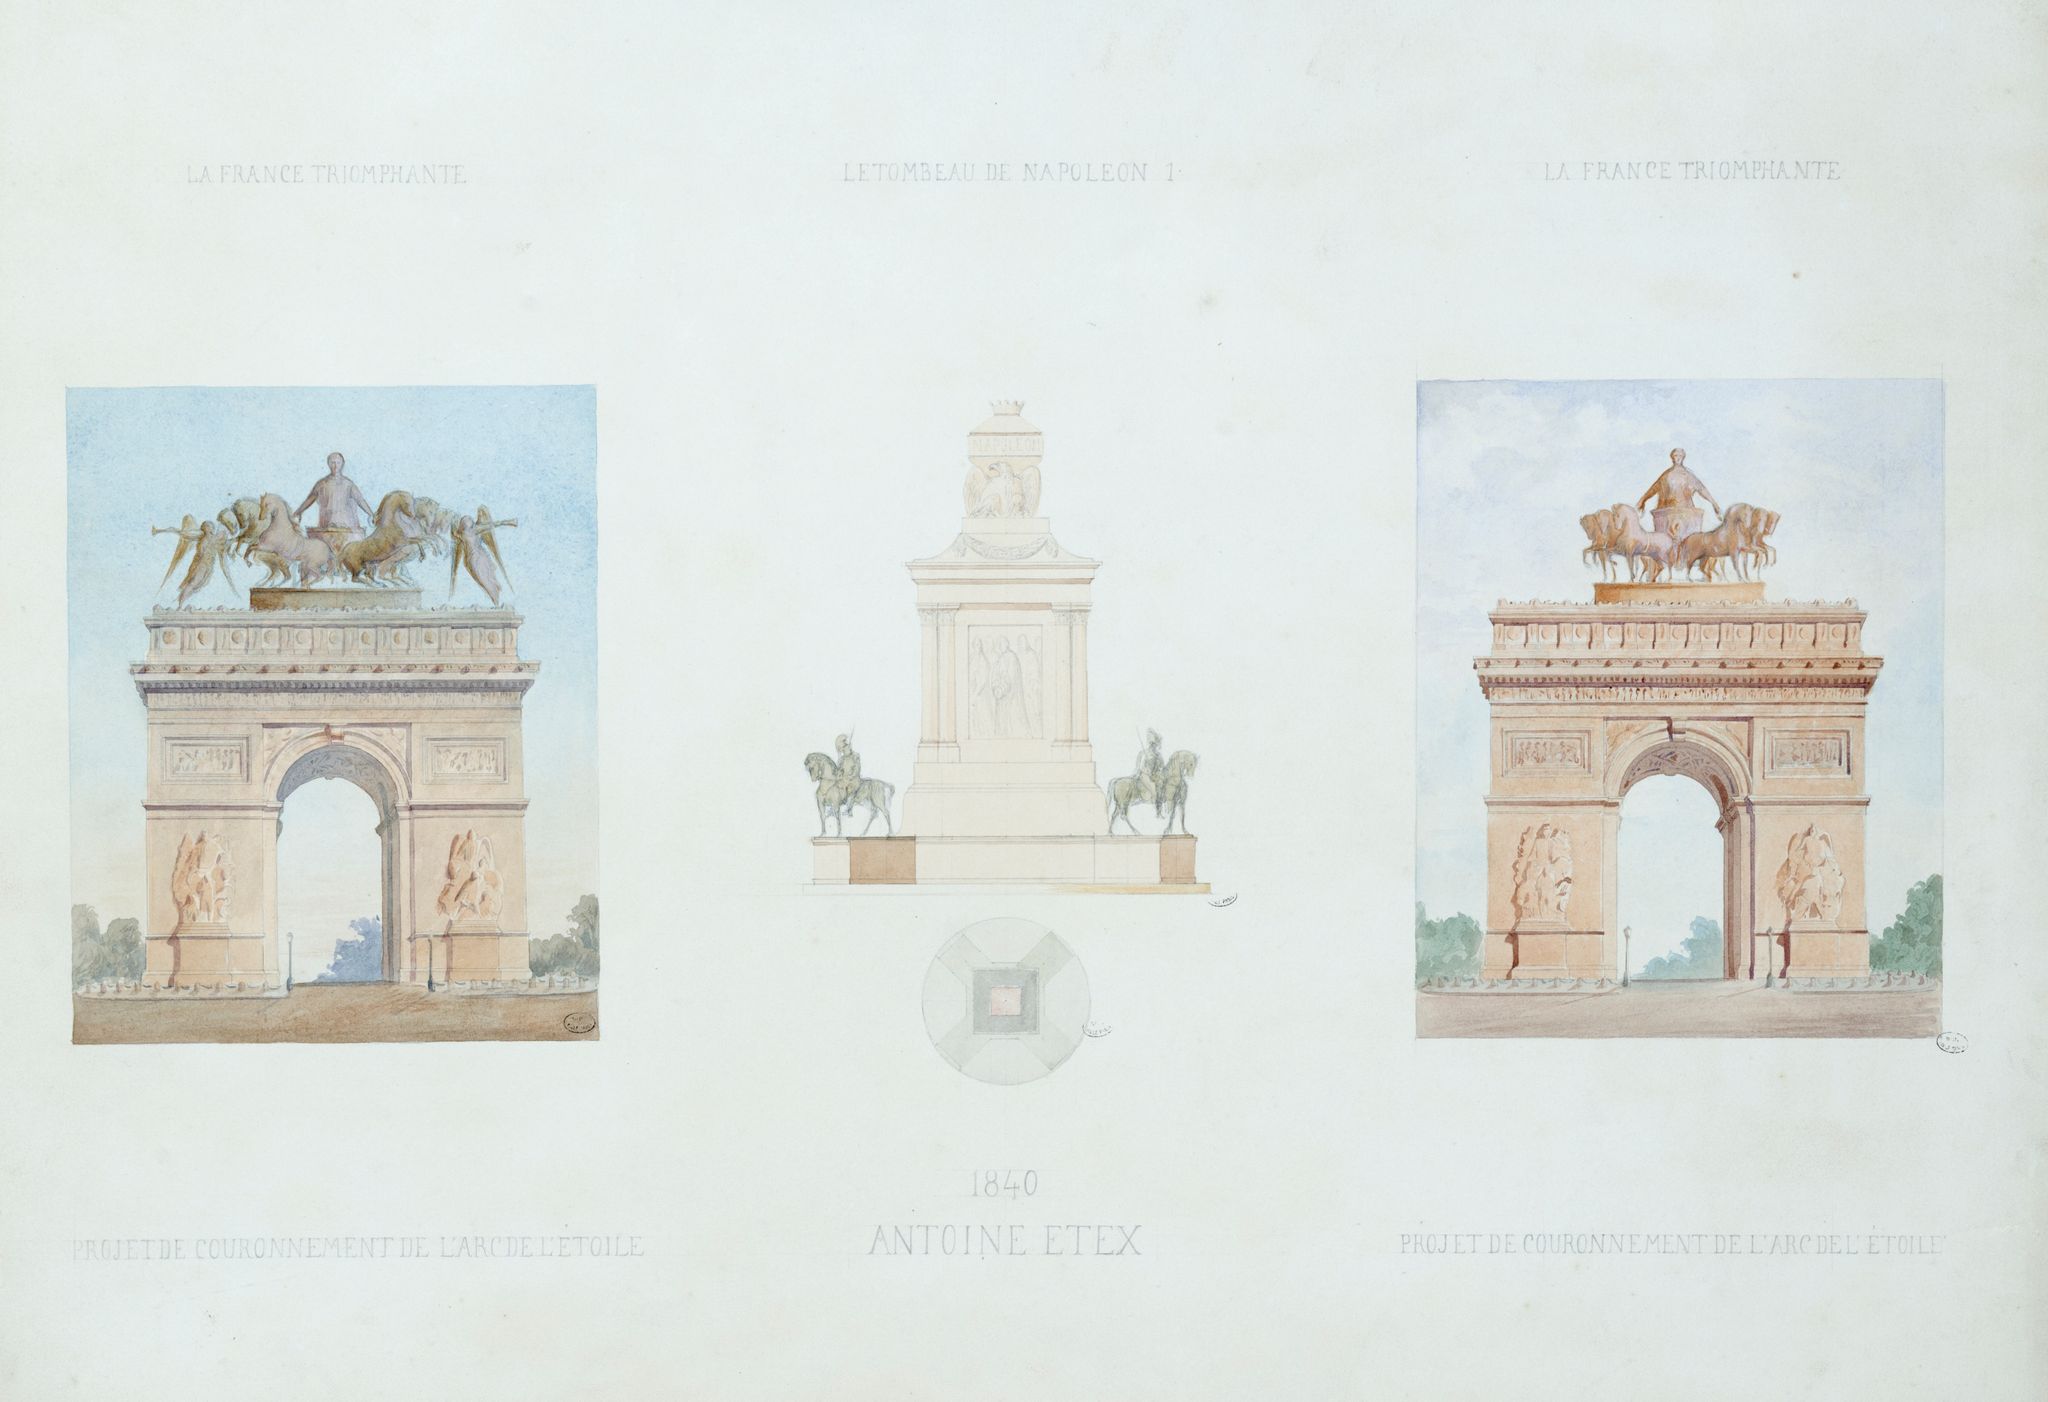 La France triomphante / Projet de couronnement de l'Arc de l'Etoile. / Le tombeau de Napoléon 1. [...] / 1840, Antoine Etex.